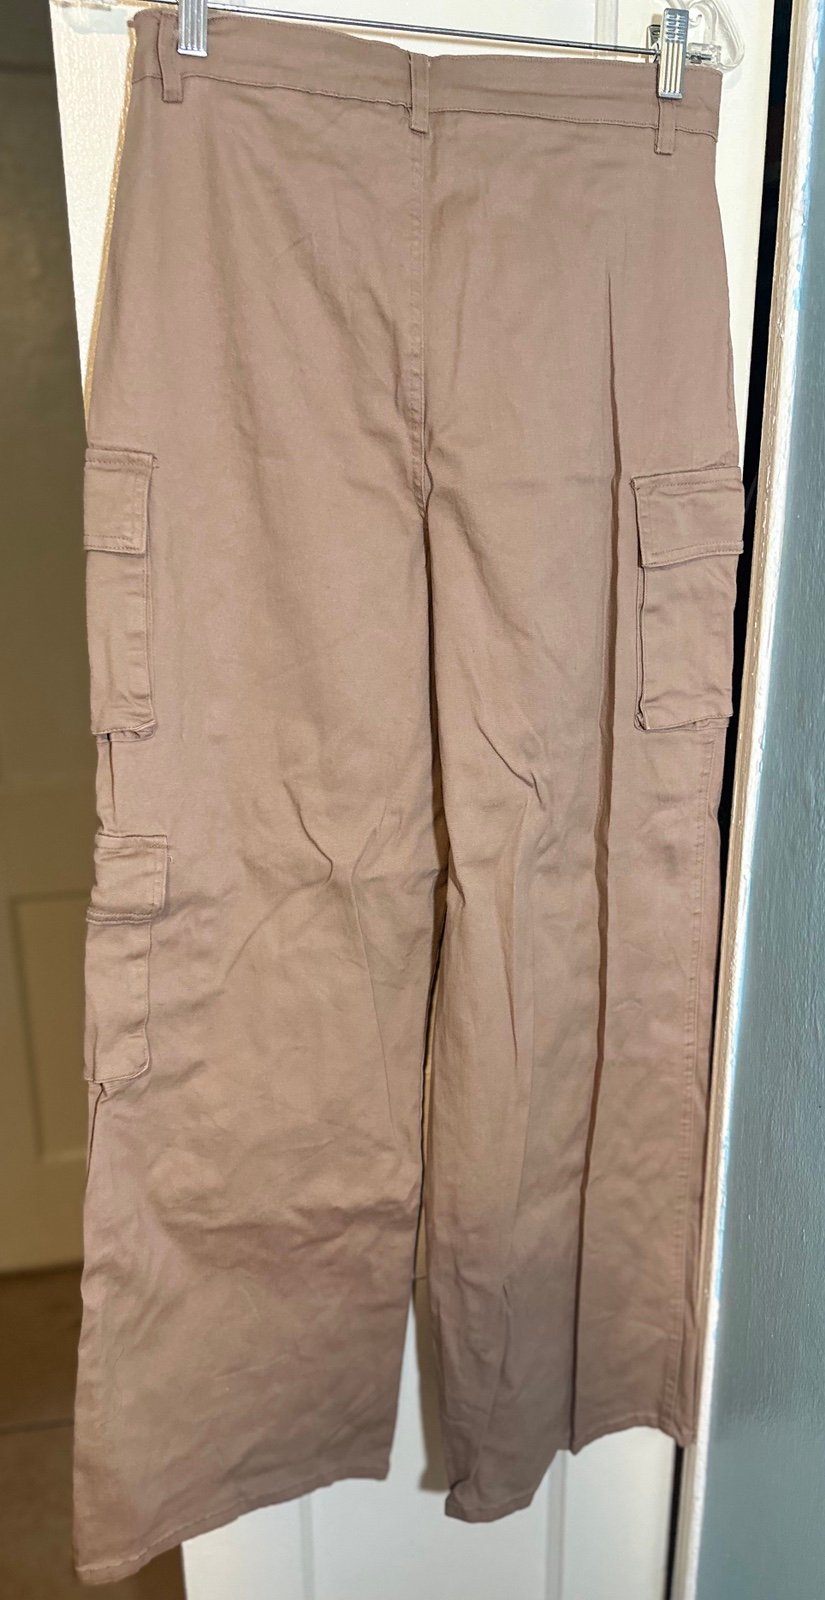 Authentic Rachel Paige Mauve Color Wide Leg Cargo Pants Size Large Cotton EUC Trendy OswpPy6Bk Wholesale